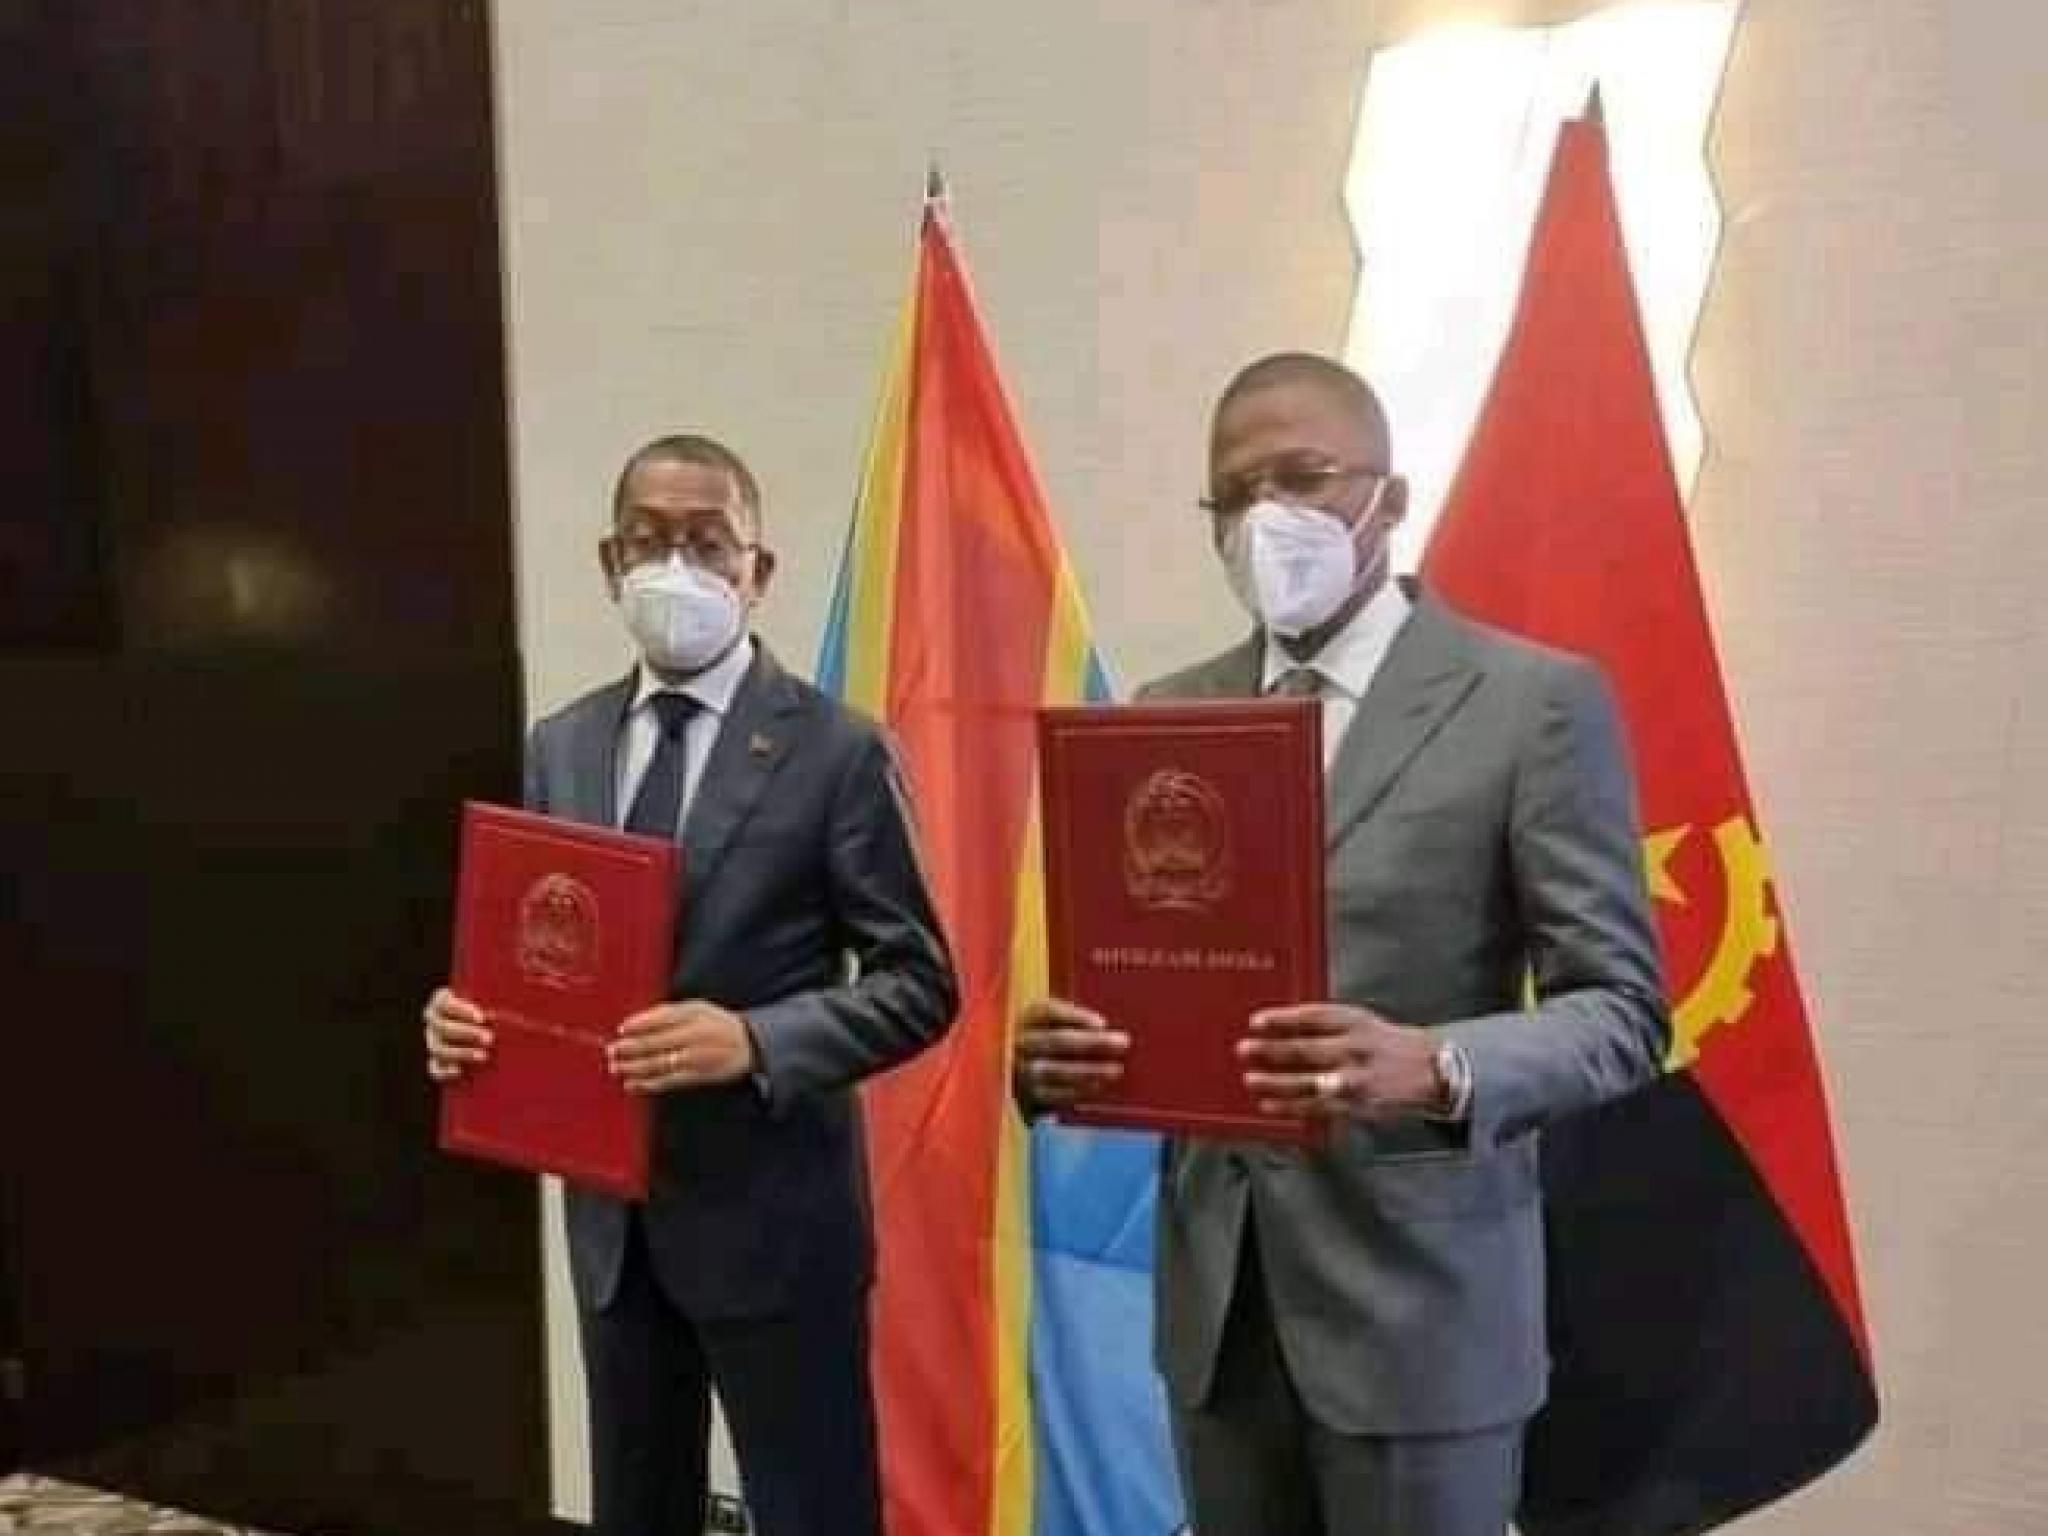 Le préaccord sur l'exploitation du pétrole de la Zone d'intérêt commun signé et présenté par les ministres congolais (à droite) et le ministre angolais (à gauche) des hydrocarbures.